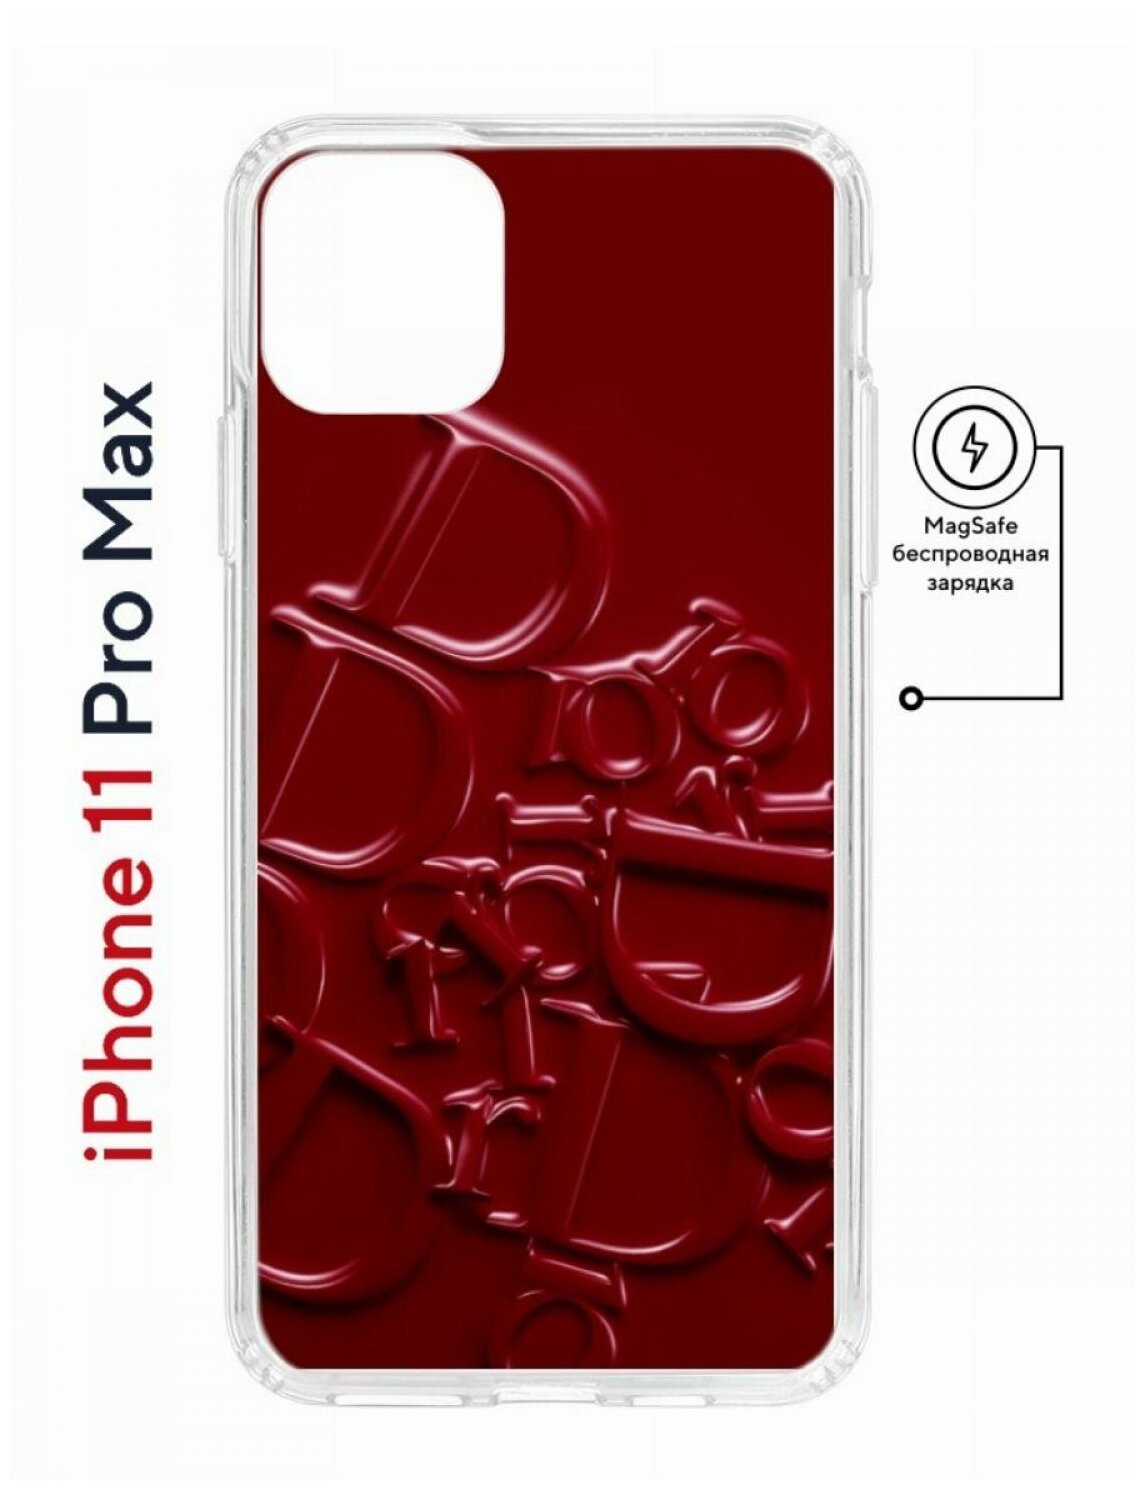 Чехол для iPhone 11 Pro Max Kruche Print MagSafe Dior, противоударный силиконовый бампер с рисунком, пластиковый кейс МагСейф с защитой камеры